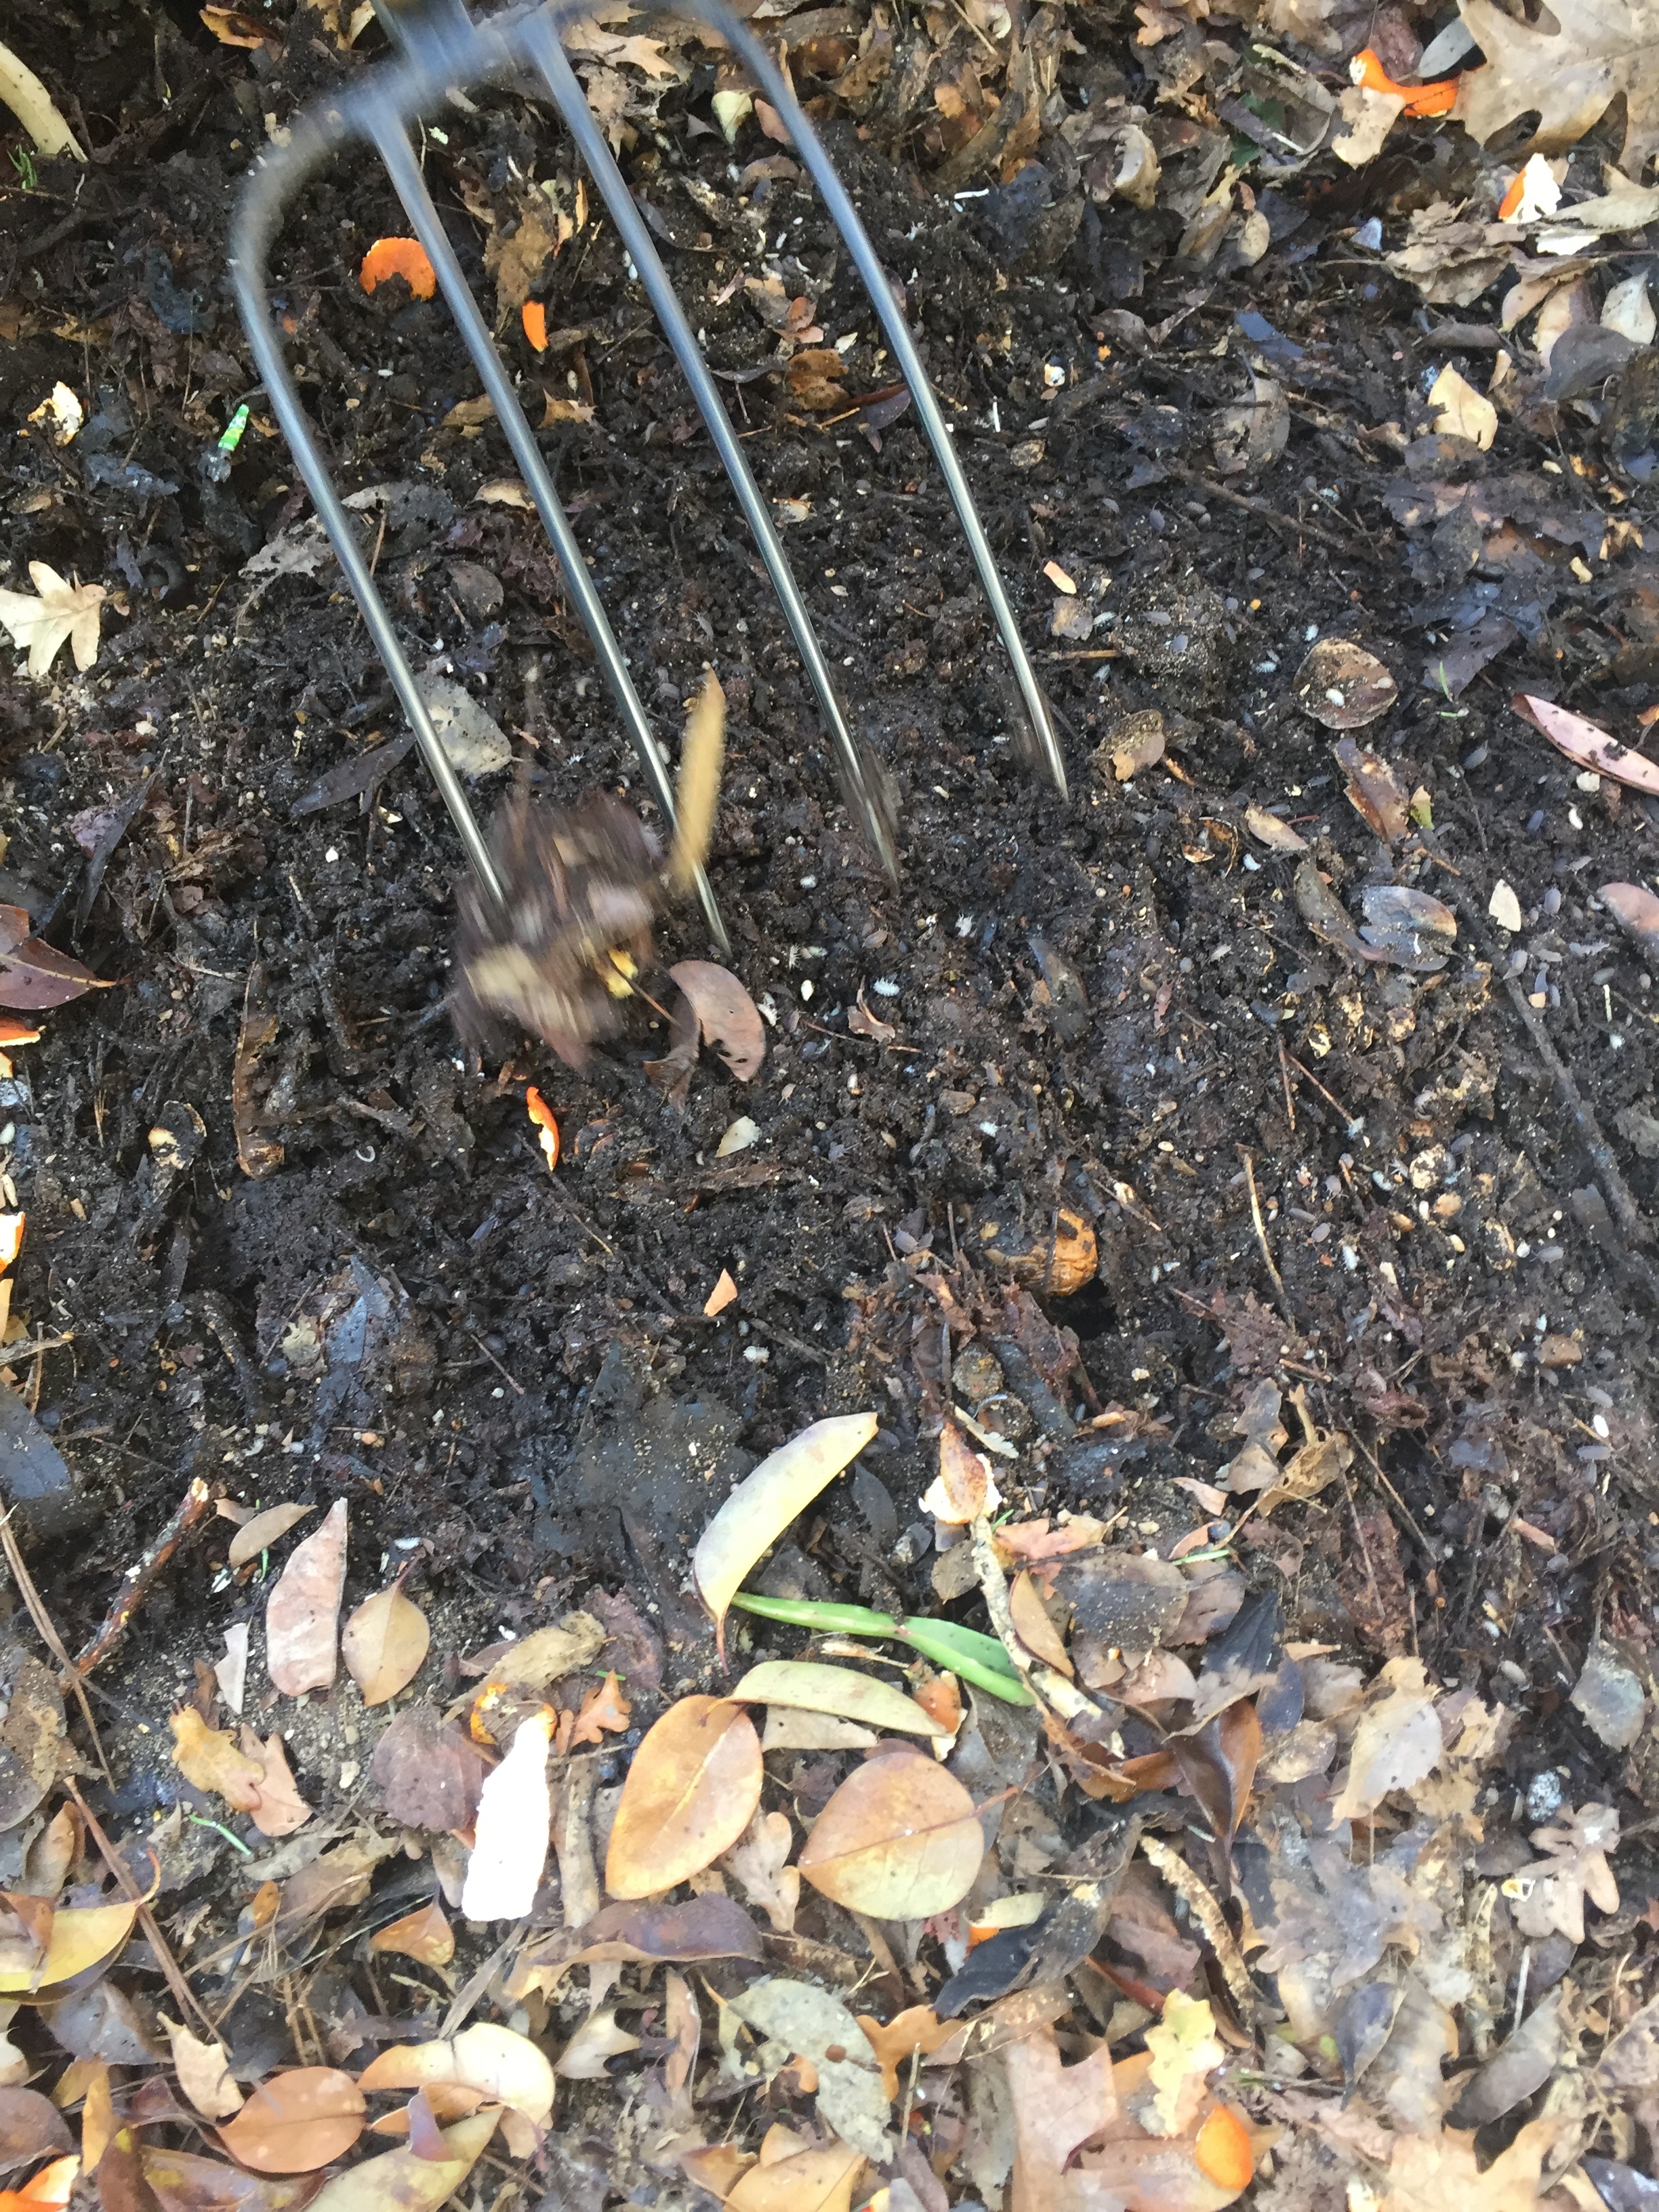 Revirar a pilha de compostagem (janeiro)
Deu-se umas reviravoltas à matéria orgânica da pilha de compostagem. Observaram-se imensos bichos de conta, fungos e algumas minhocas.